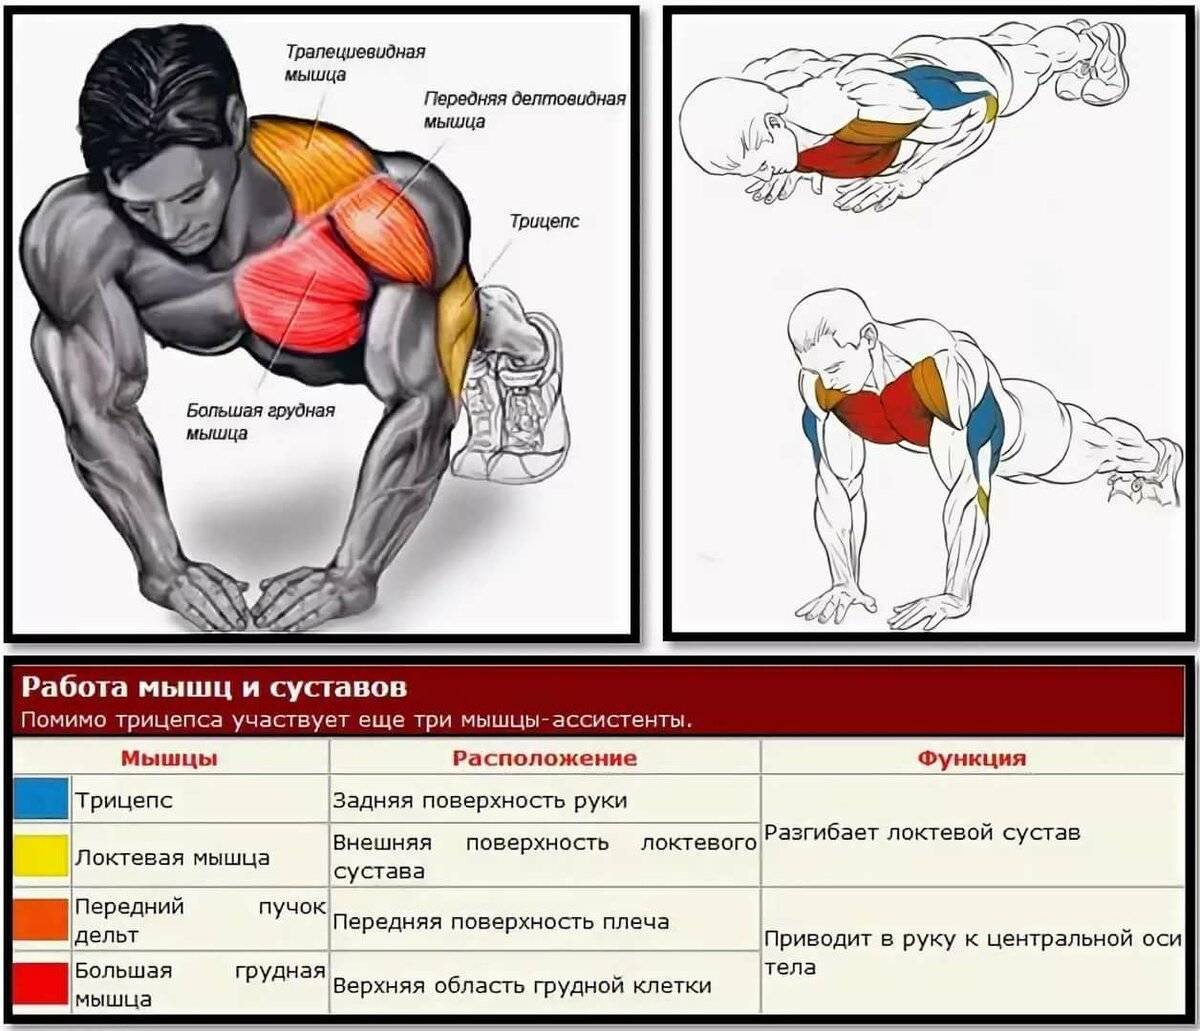 Отжимания от пола: какие мышцы работают, виды отжиманий, как правильно выполнять упражнение